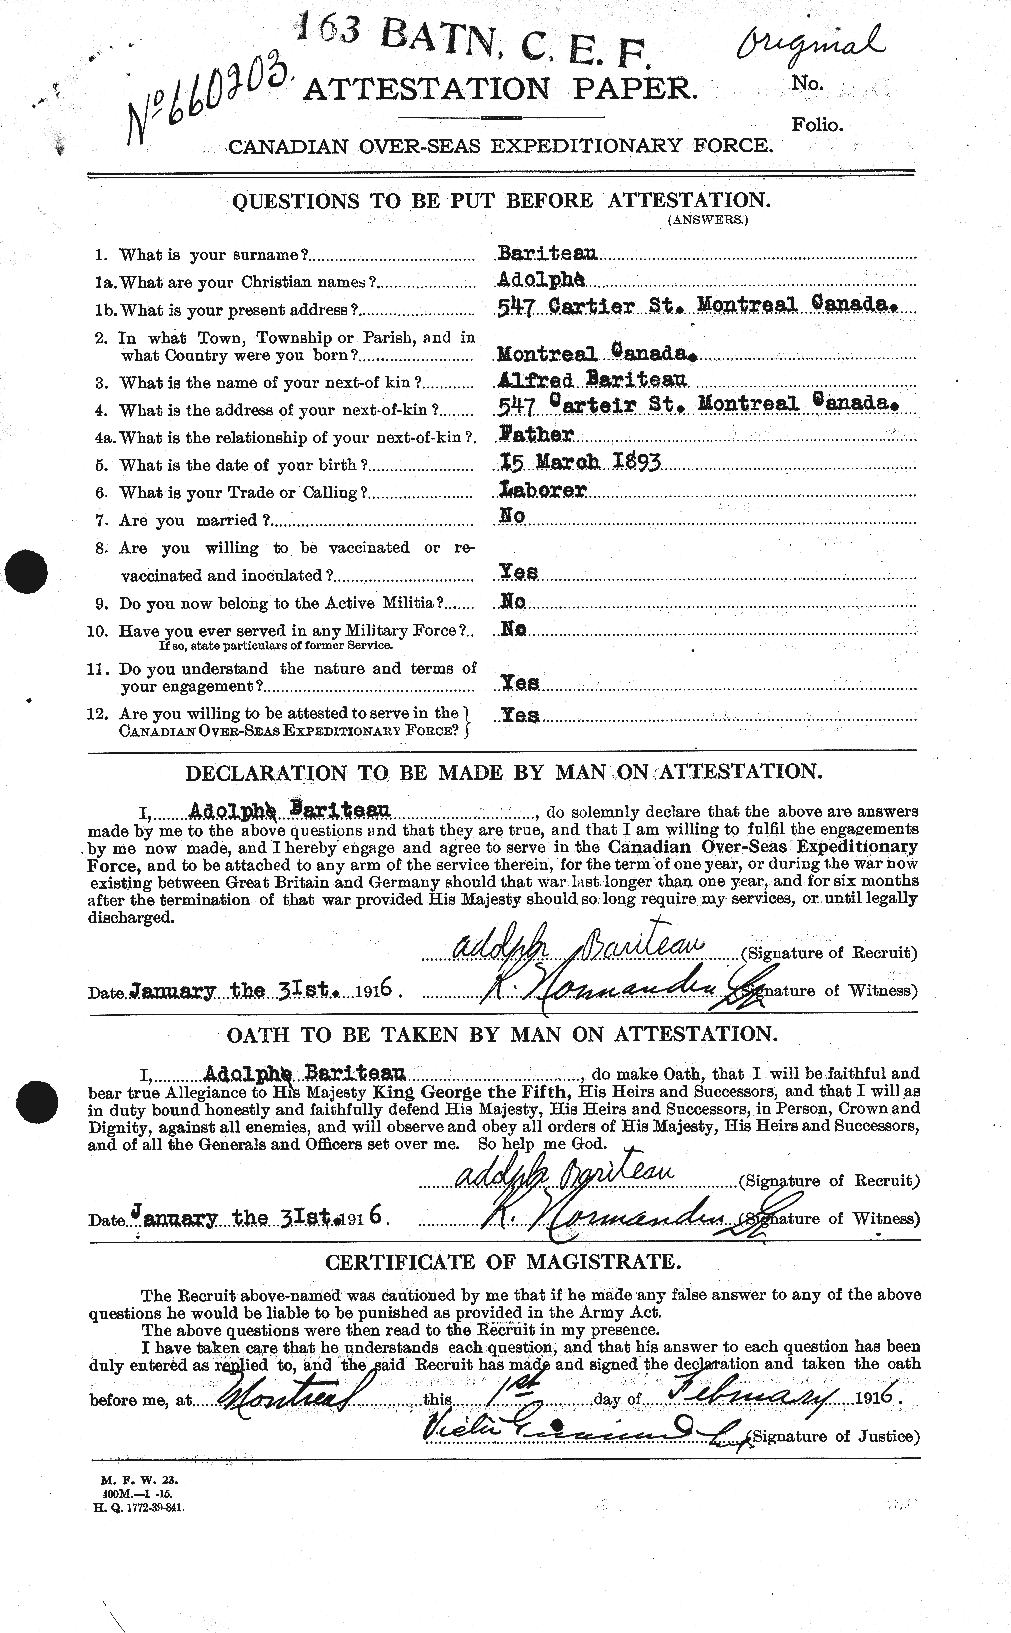 Dossiers du Personnel de la Première Guerre mondiale - CEC 227675a